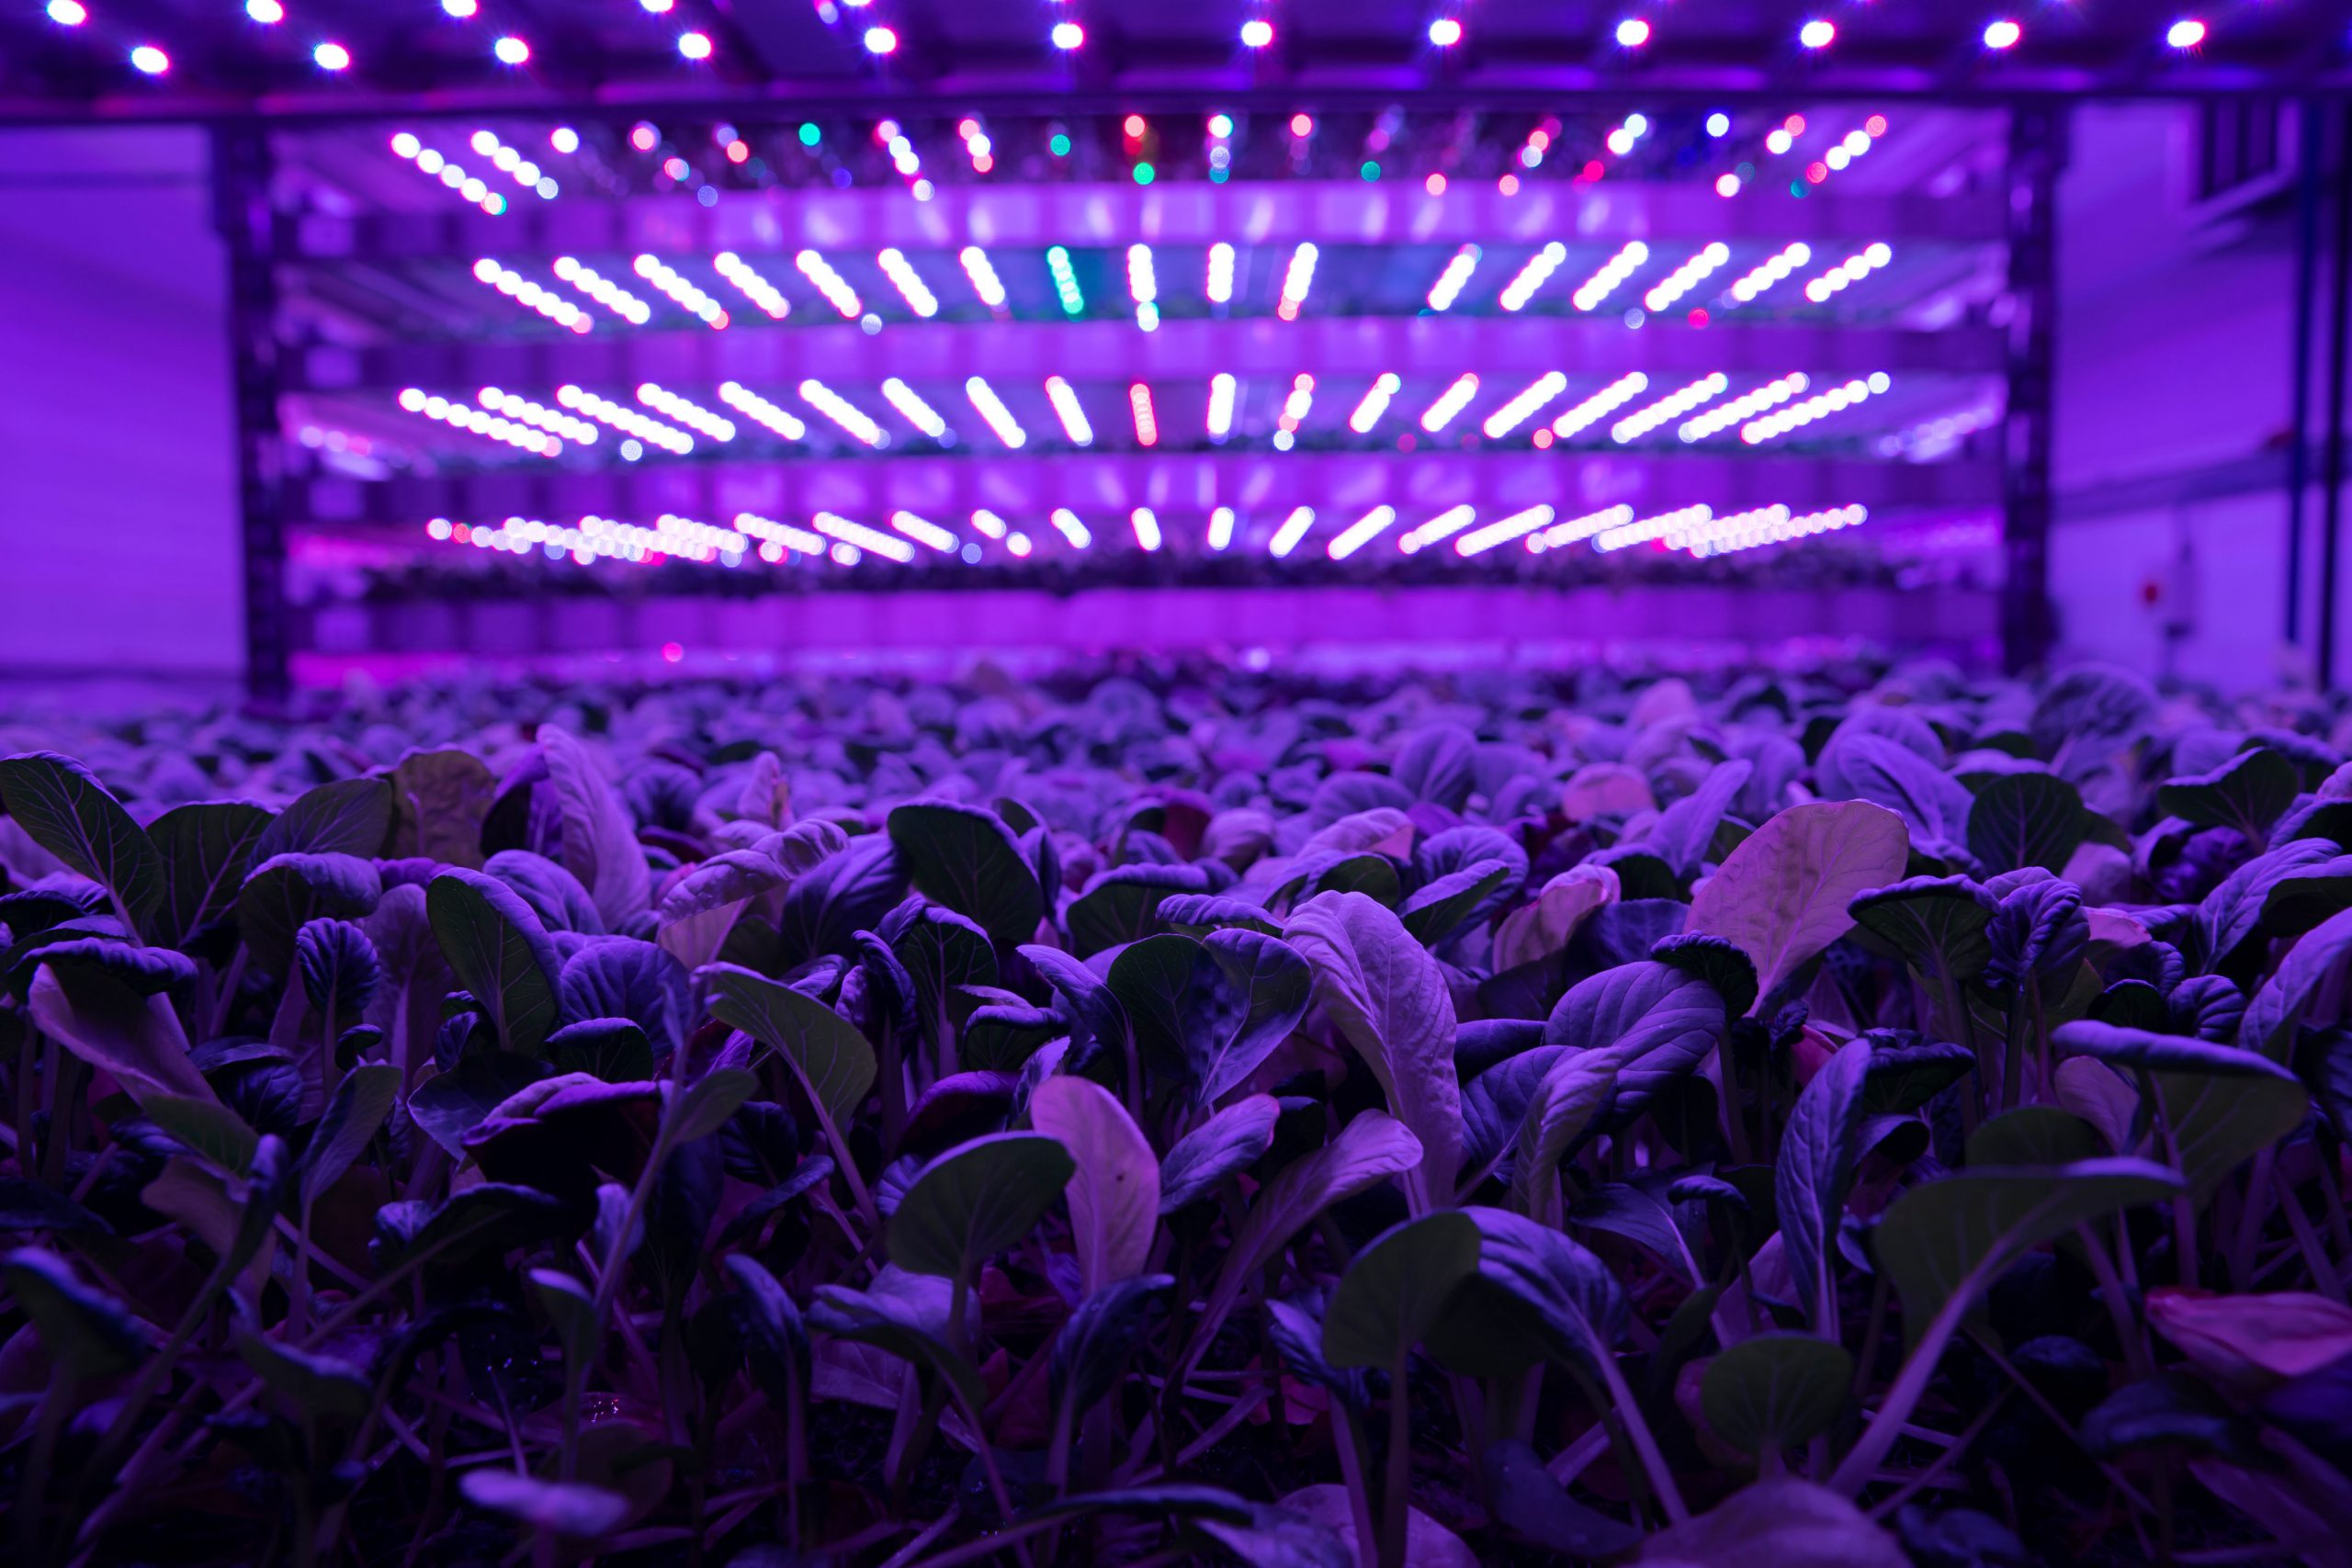 plants under purple light indoors